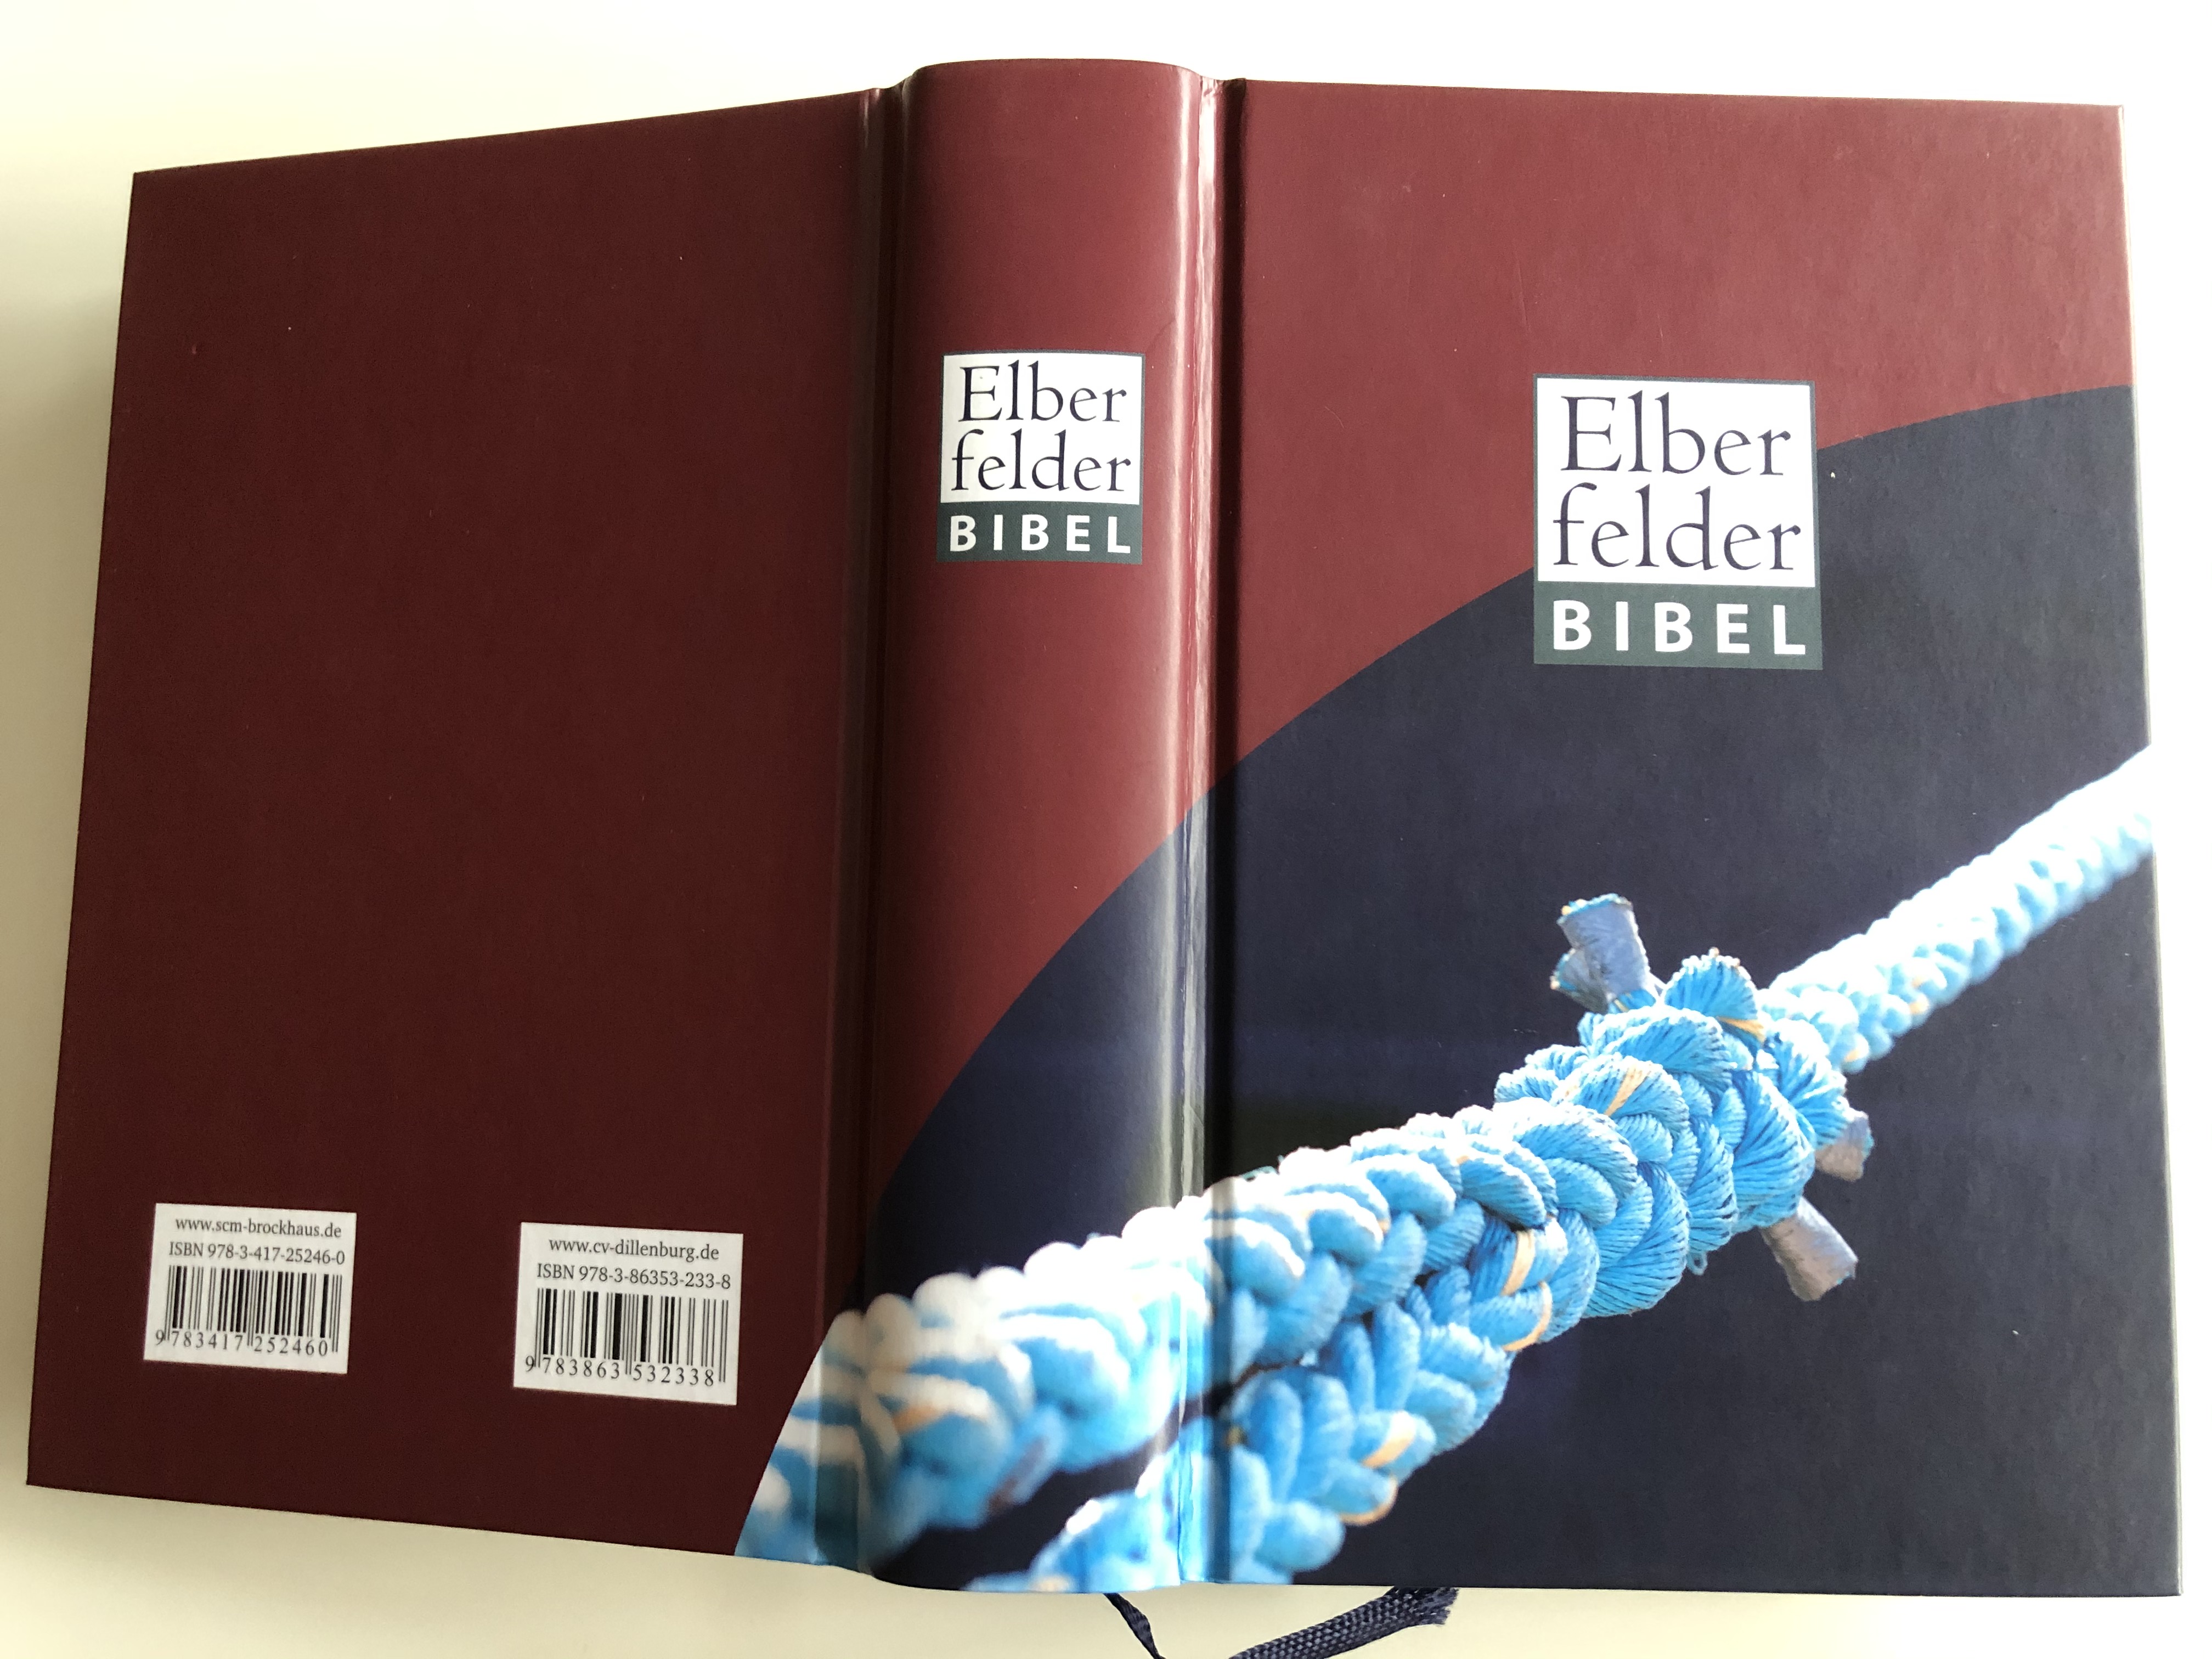 elberfelder-bibel-anchor-rope-cover-holy-bible-in-german-language-14.jpg